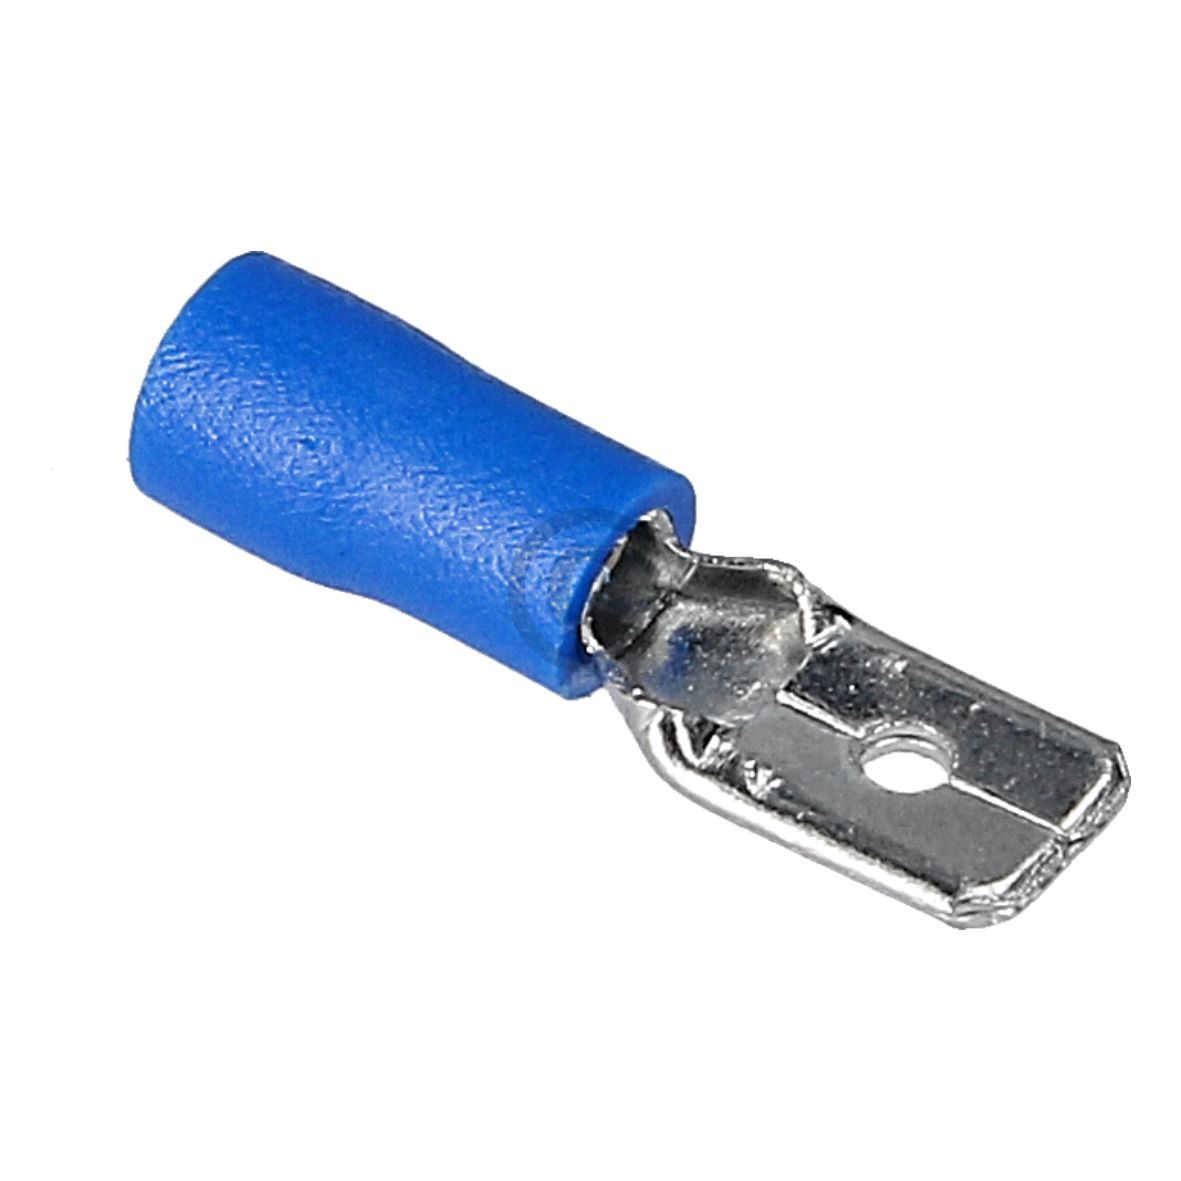 Flachstecker blau 6,3mm für 1,5-2,5 mm² Adernquerschnitt